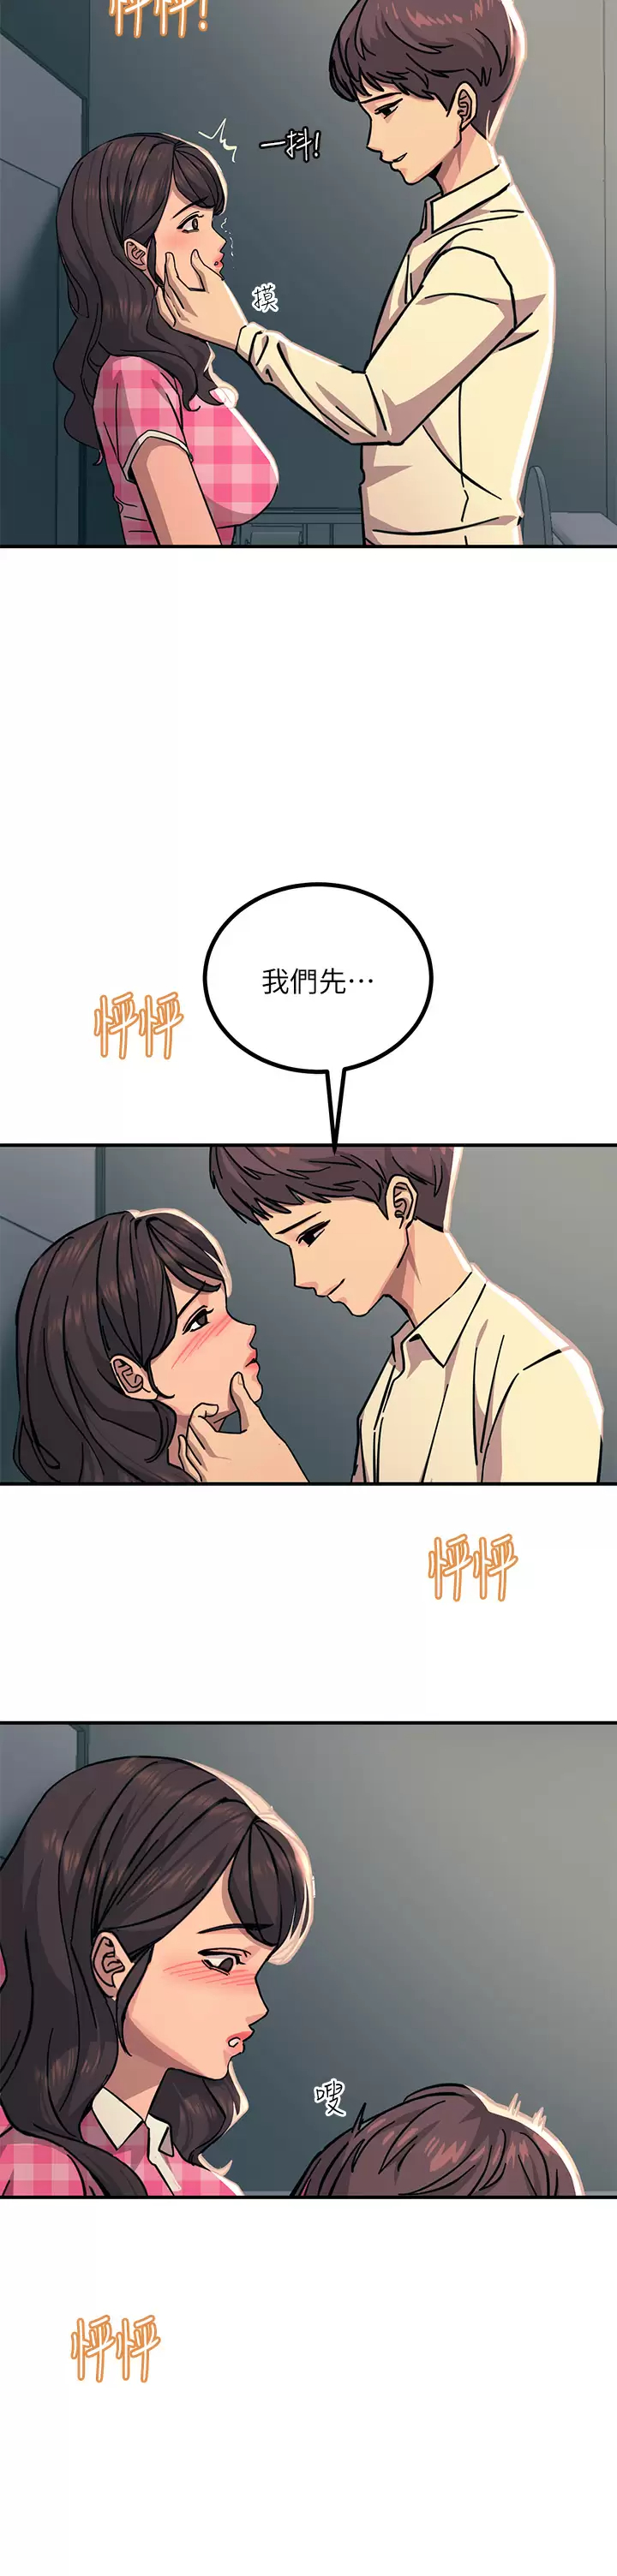 韩国污漫画 觸電大師 第22话 我要你成为我的性奴! 26